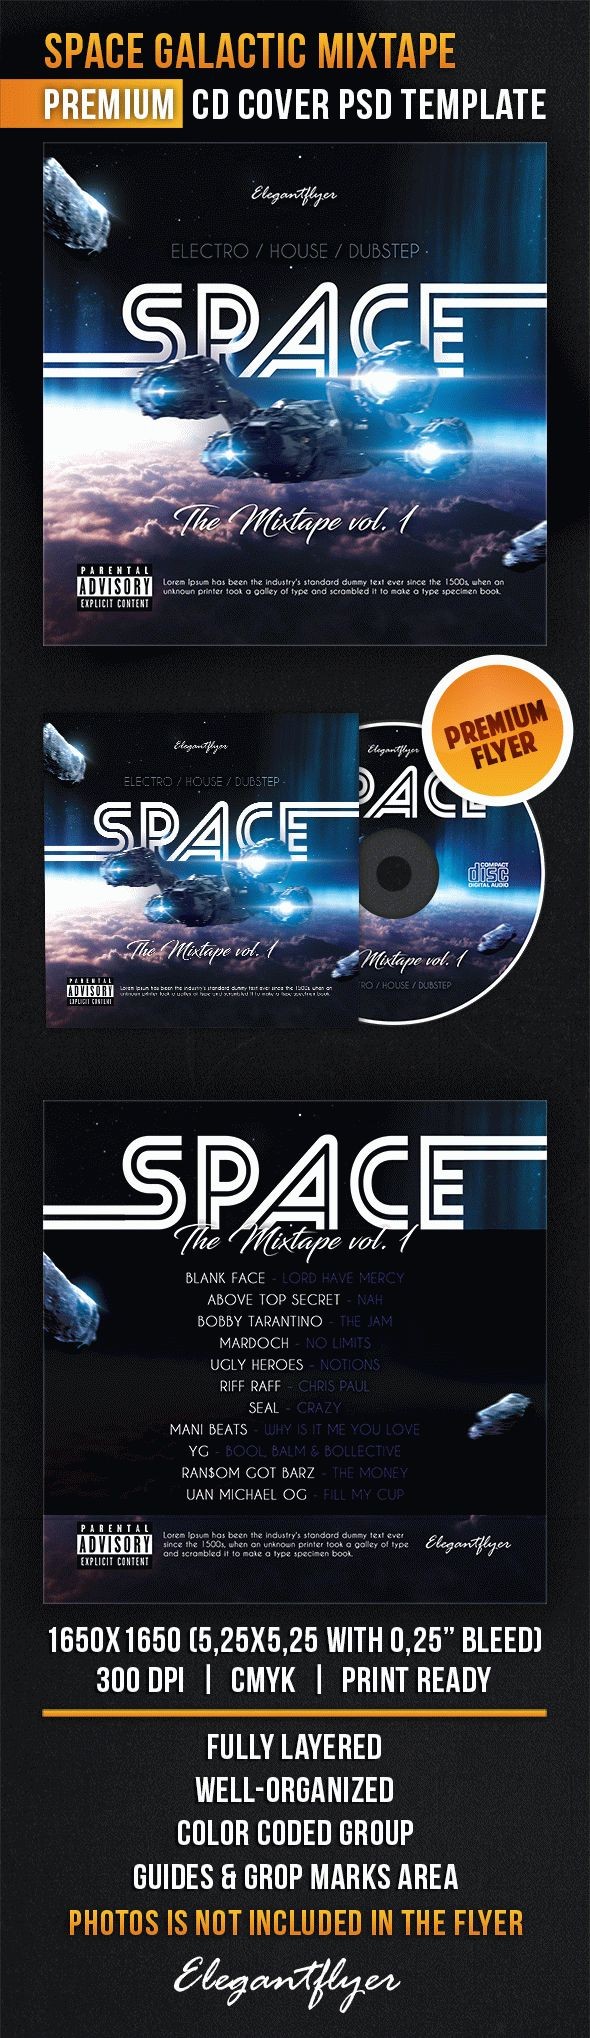 Space Galactic Mixtape by ElegantFlyer